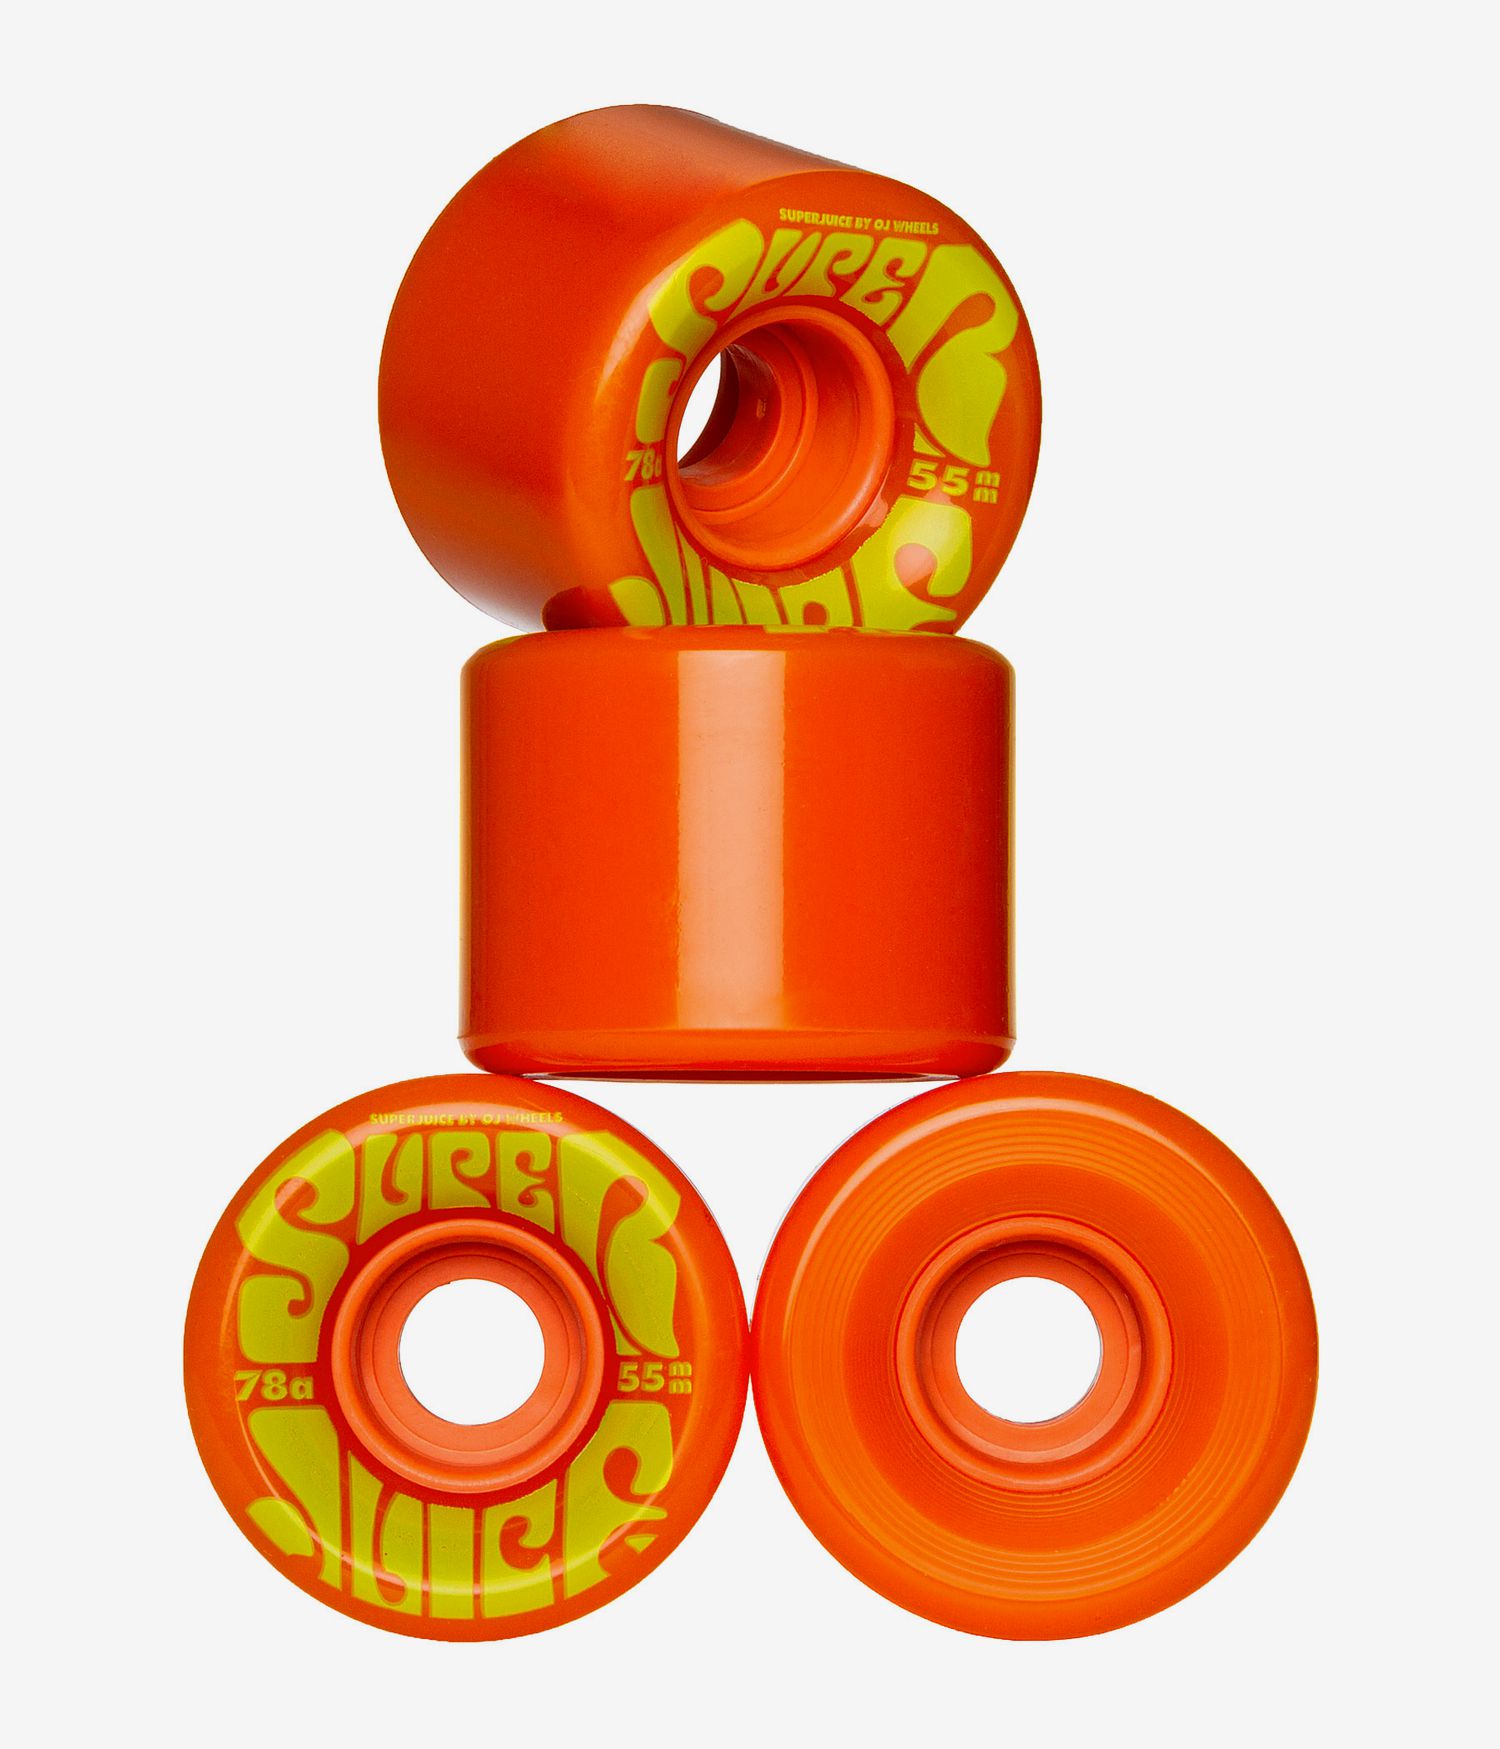 OJ Wheels 55mm Mini Super Juice 78a skateboardwielen orange